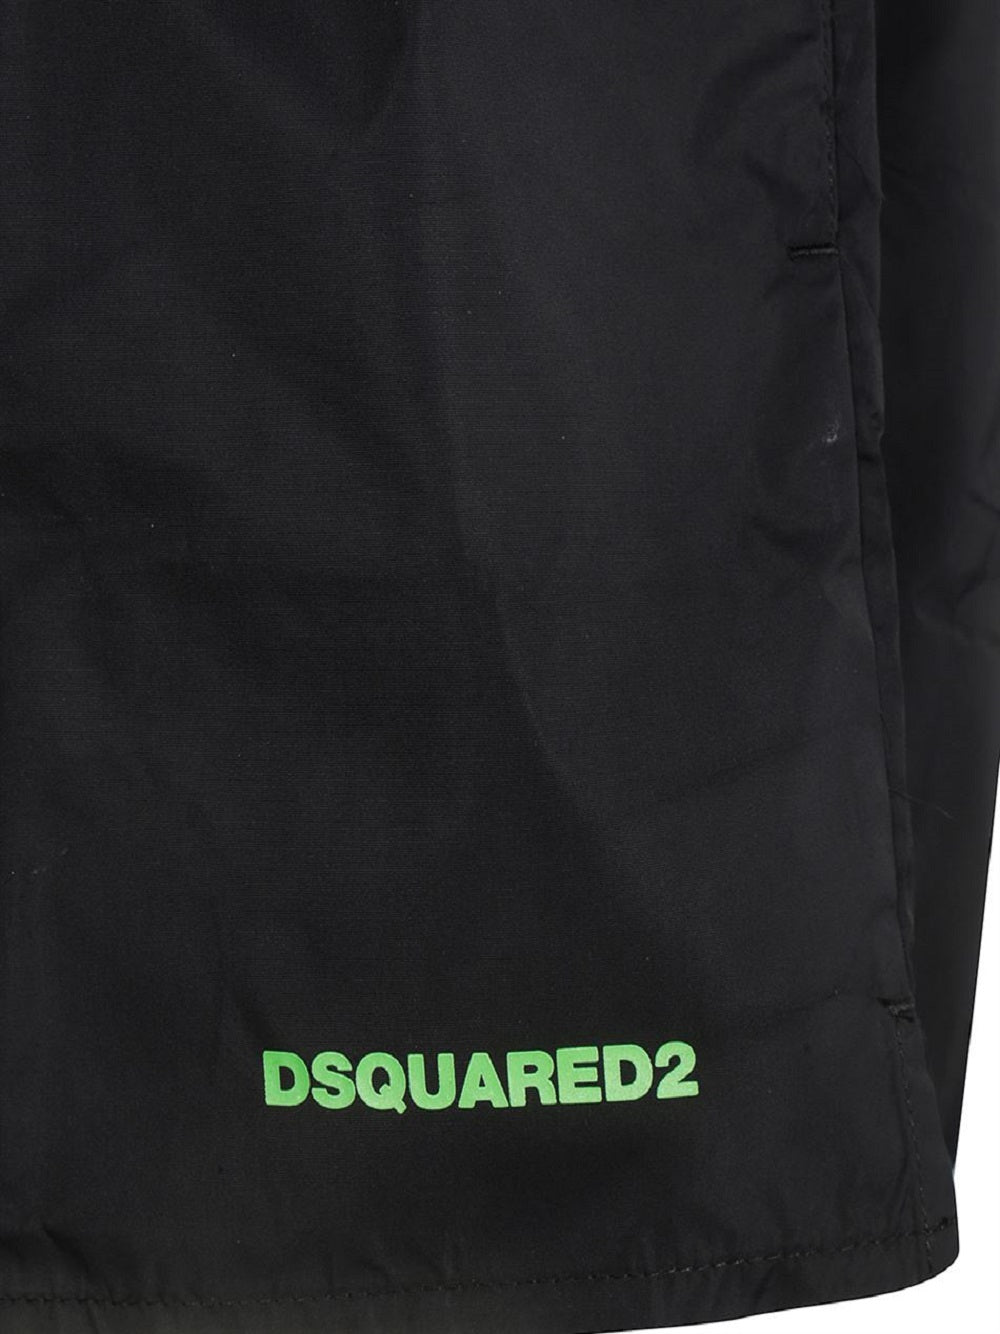 Costume da bagno Dsquared2 D7B642400 nero con logo posteriore in verde fluo con vita elasticizzata e coulisse